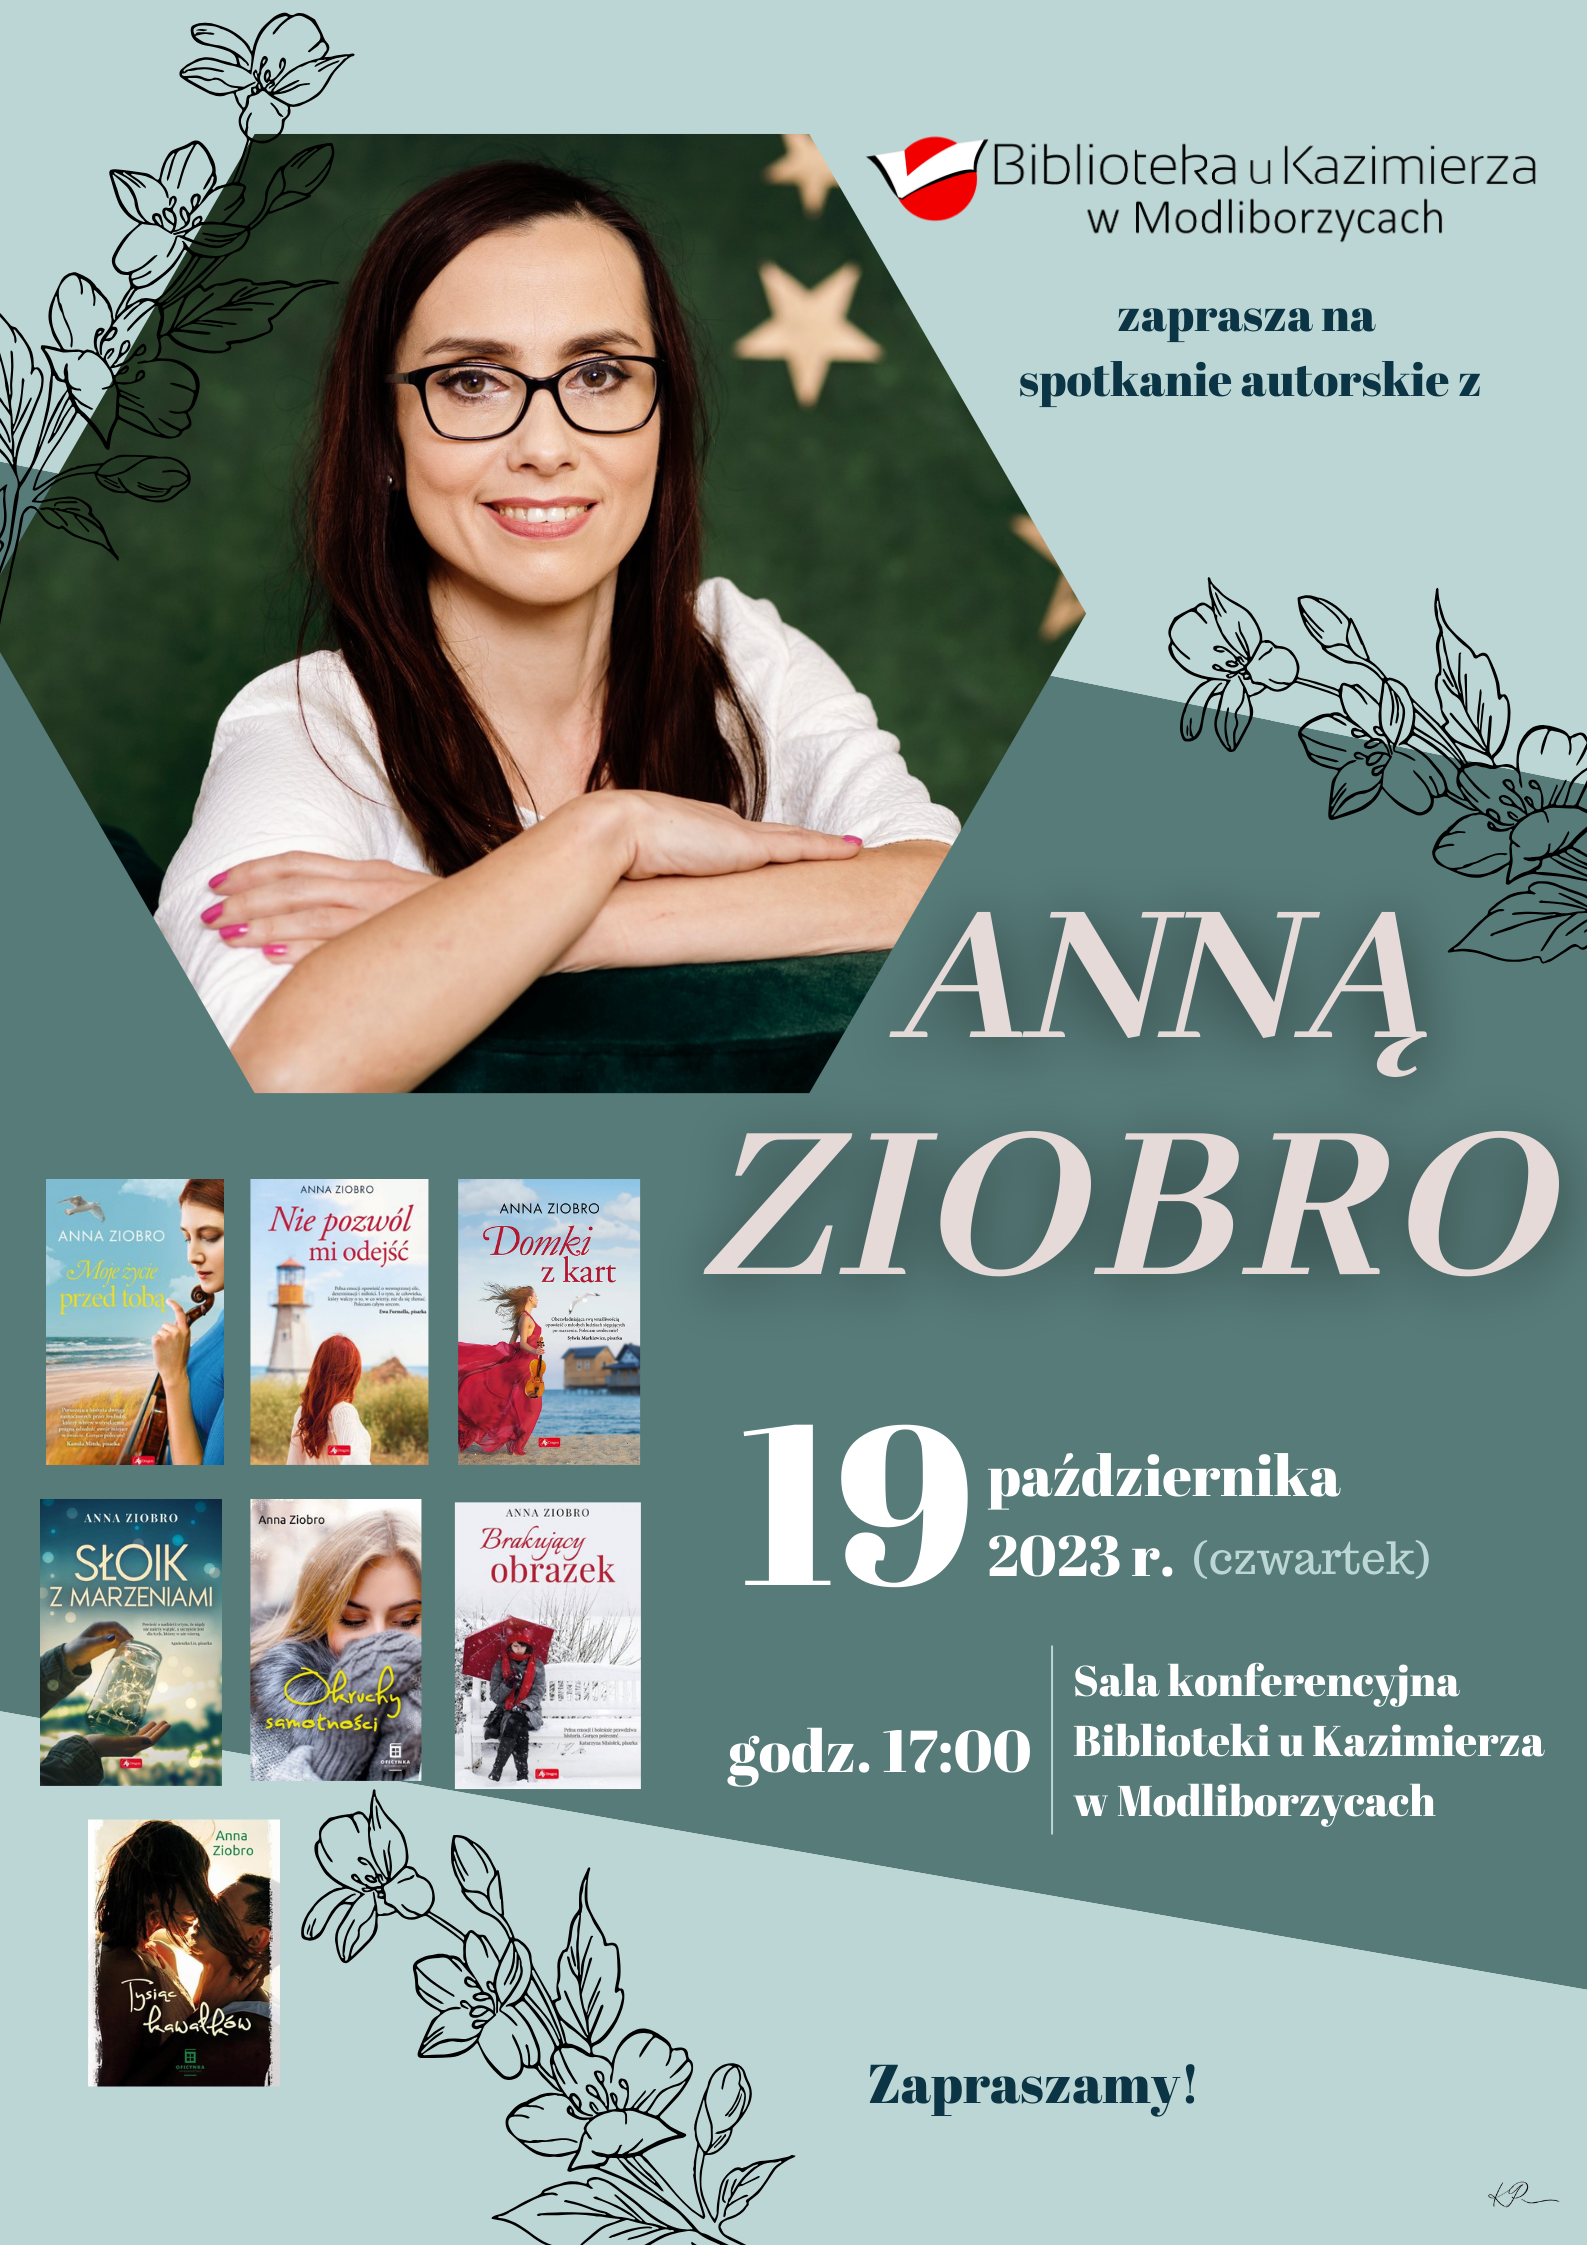 Serdecznie zapraszamy na spotkanie autorskie z Anną Ziobro, autorką powieści obyczajowych 19 października 2023 r., godz. 17:00 w Bibliotece u Kazimierza w Modliborzycach.